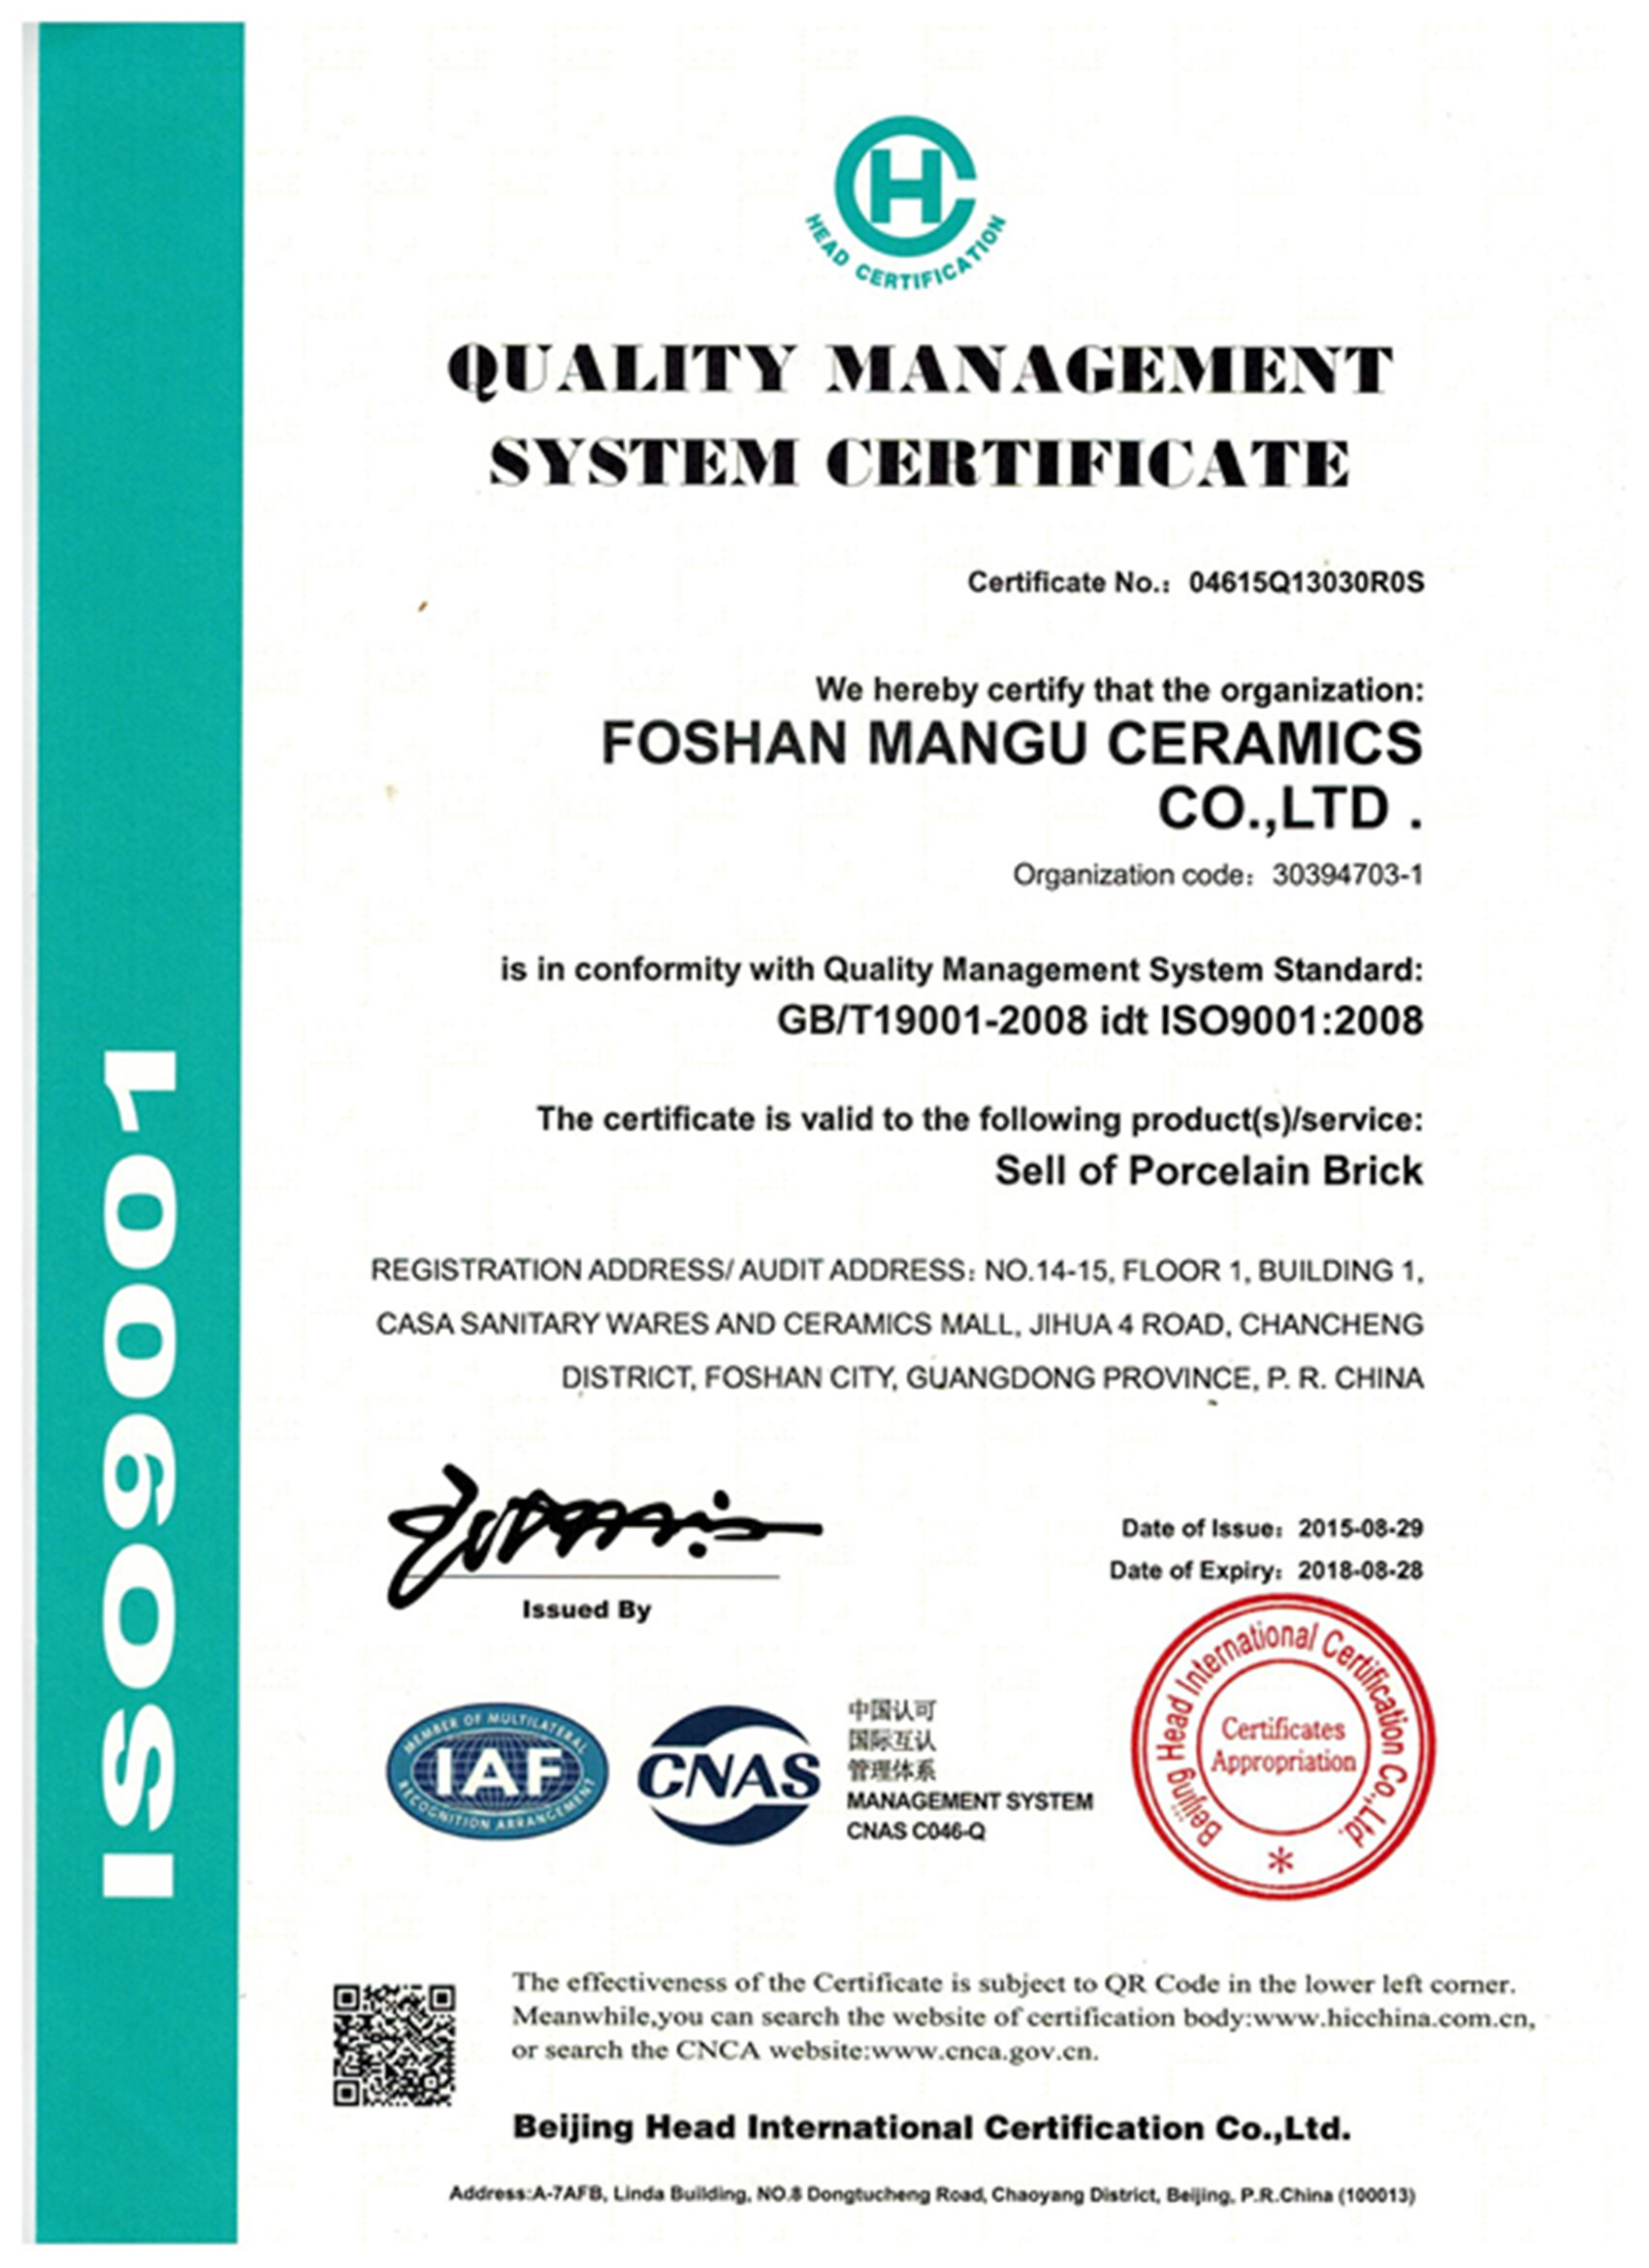 国际体系认证ISO9001